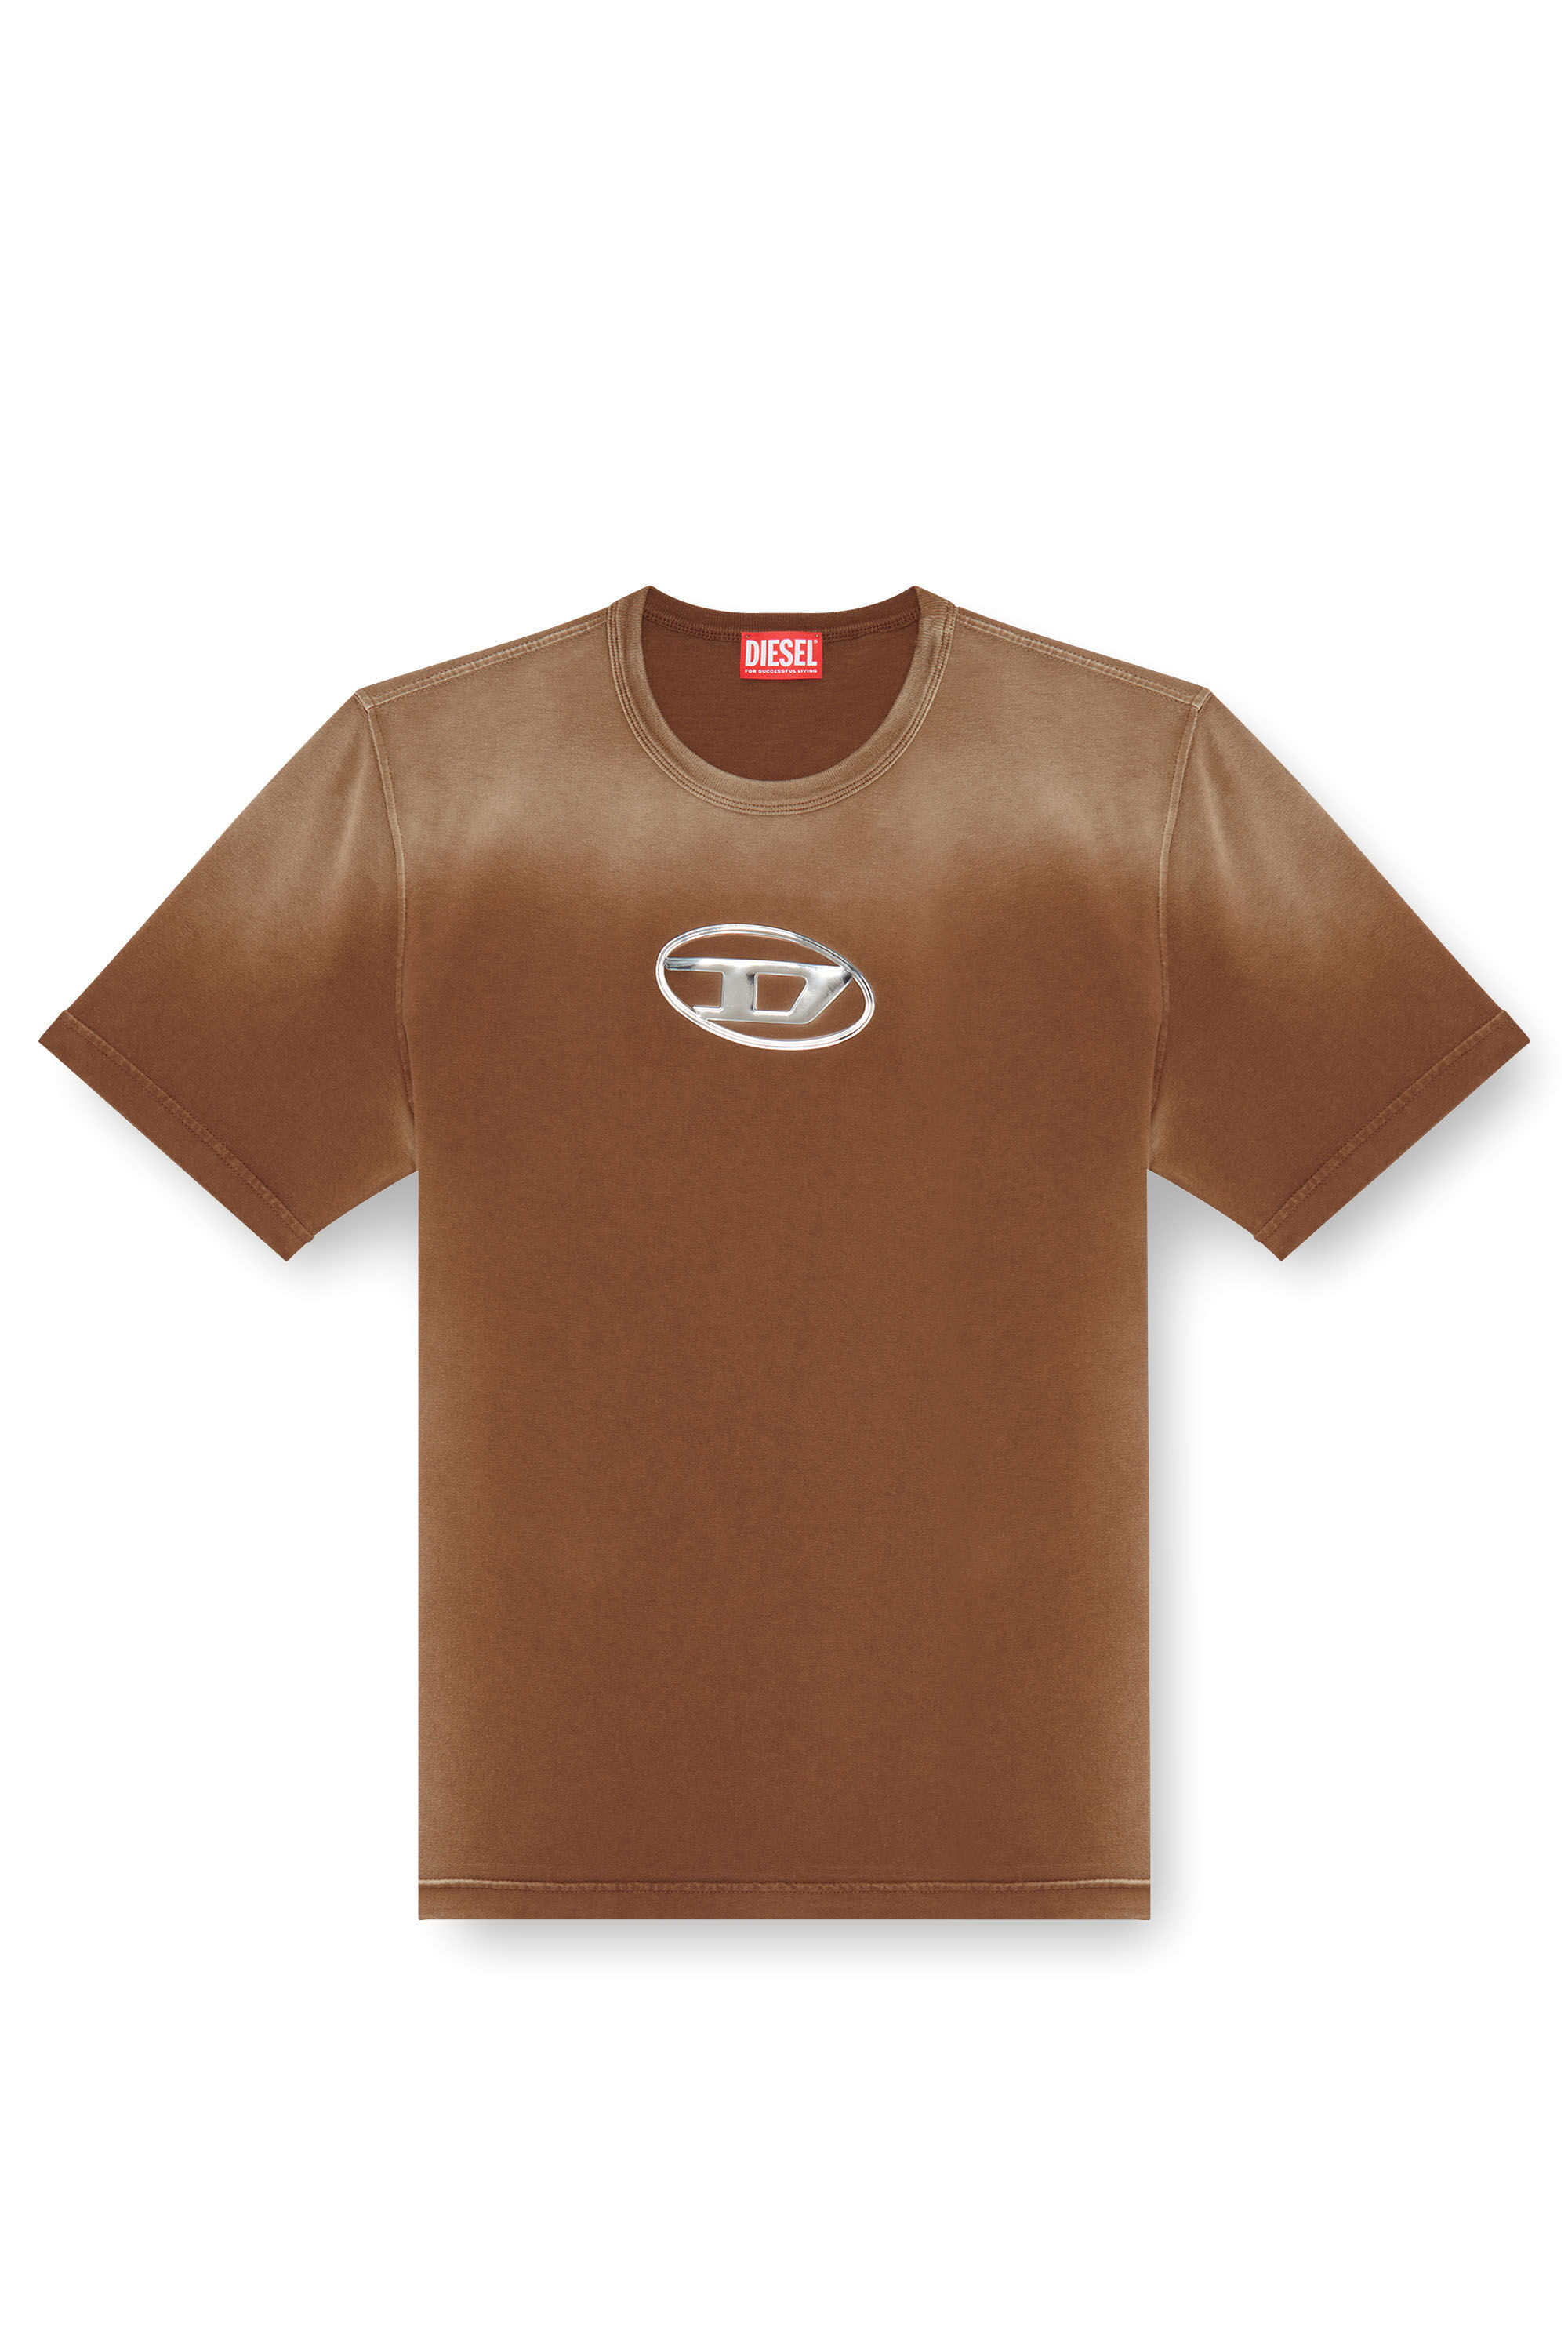 Diesel - T-ADJUST-Q8, Homme T-shirt délavé avec cut-out Oval D in Marron - Image 2